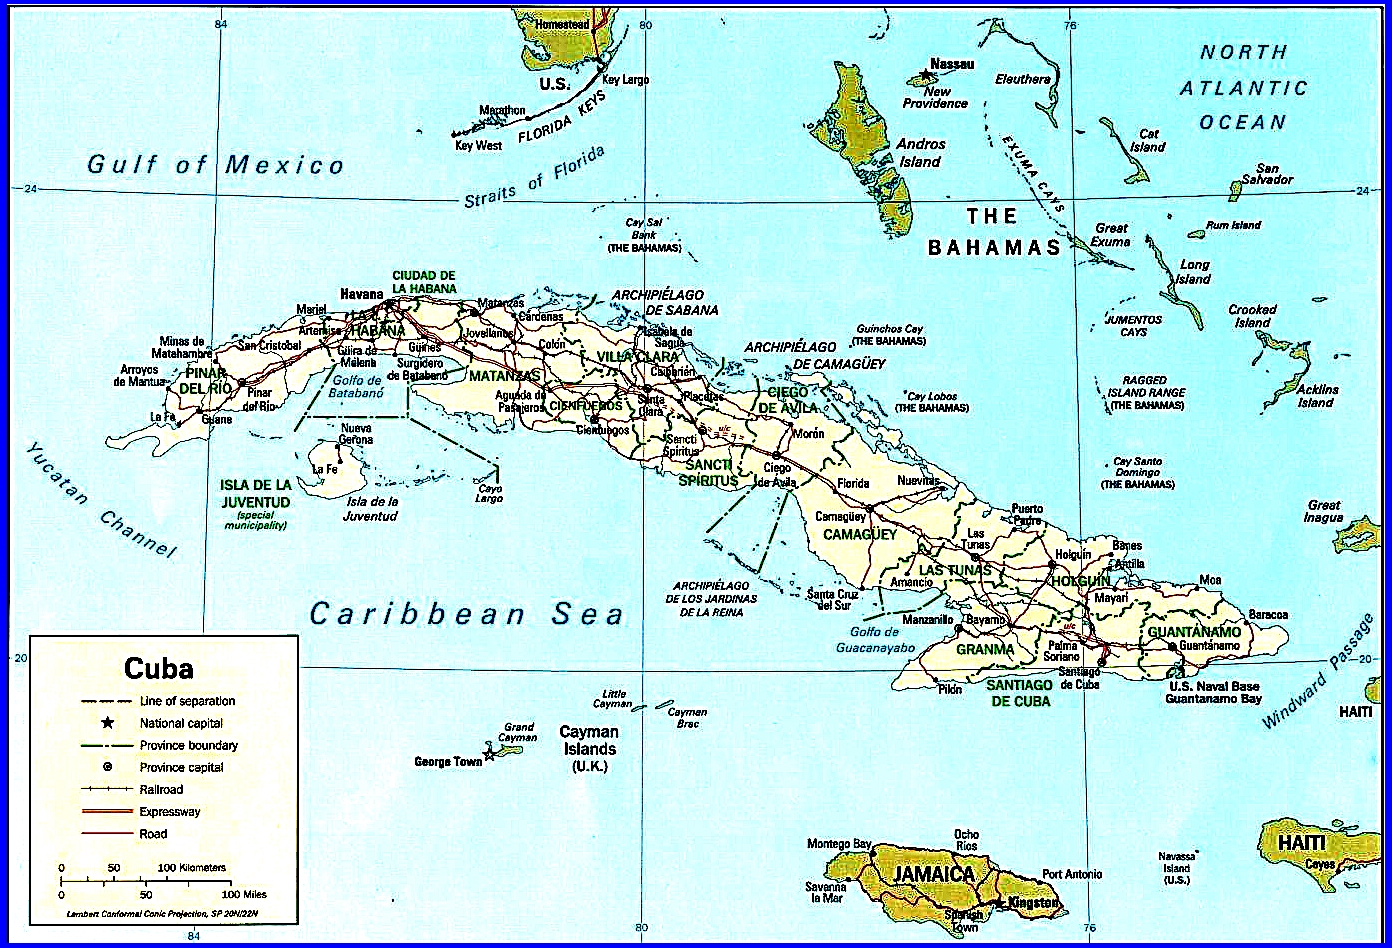 Cuba2 Image002 